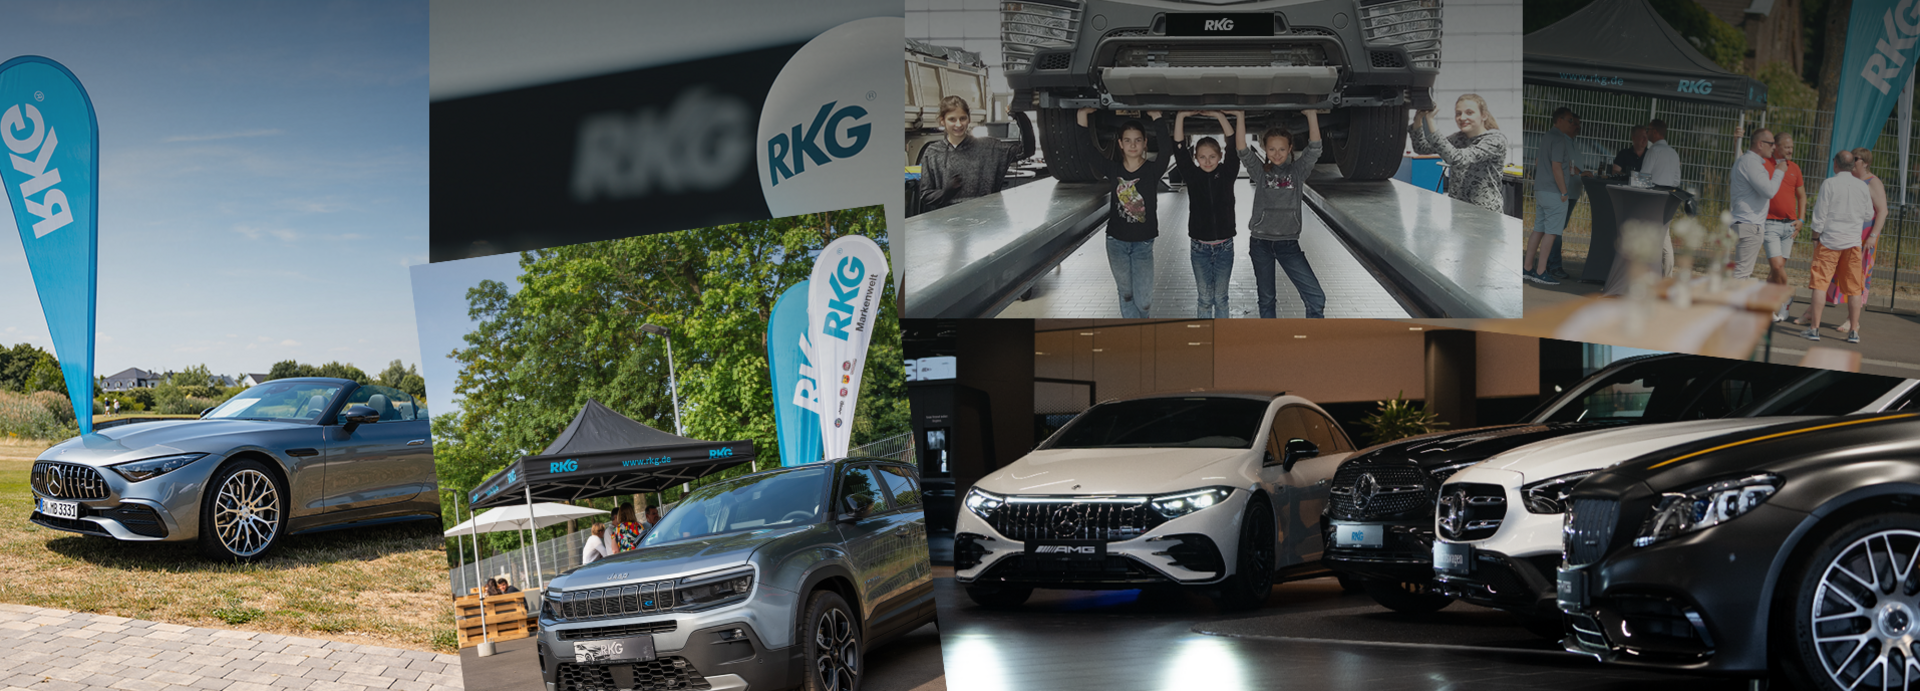 RKG - zertifizierter Partner für Mercedes-Benz & Mercedes-AMG RKG